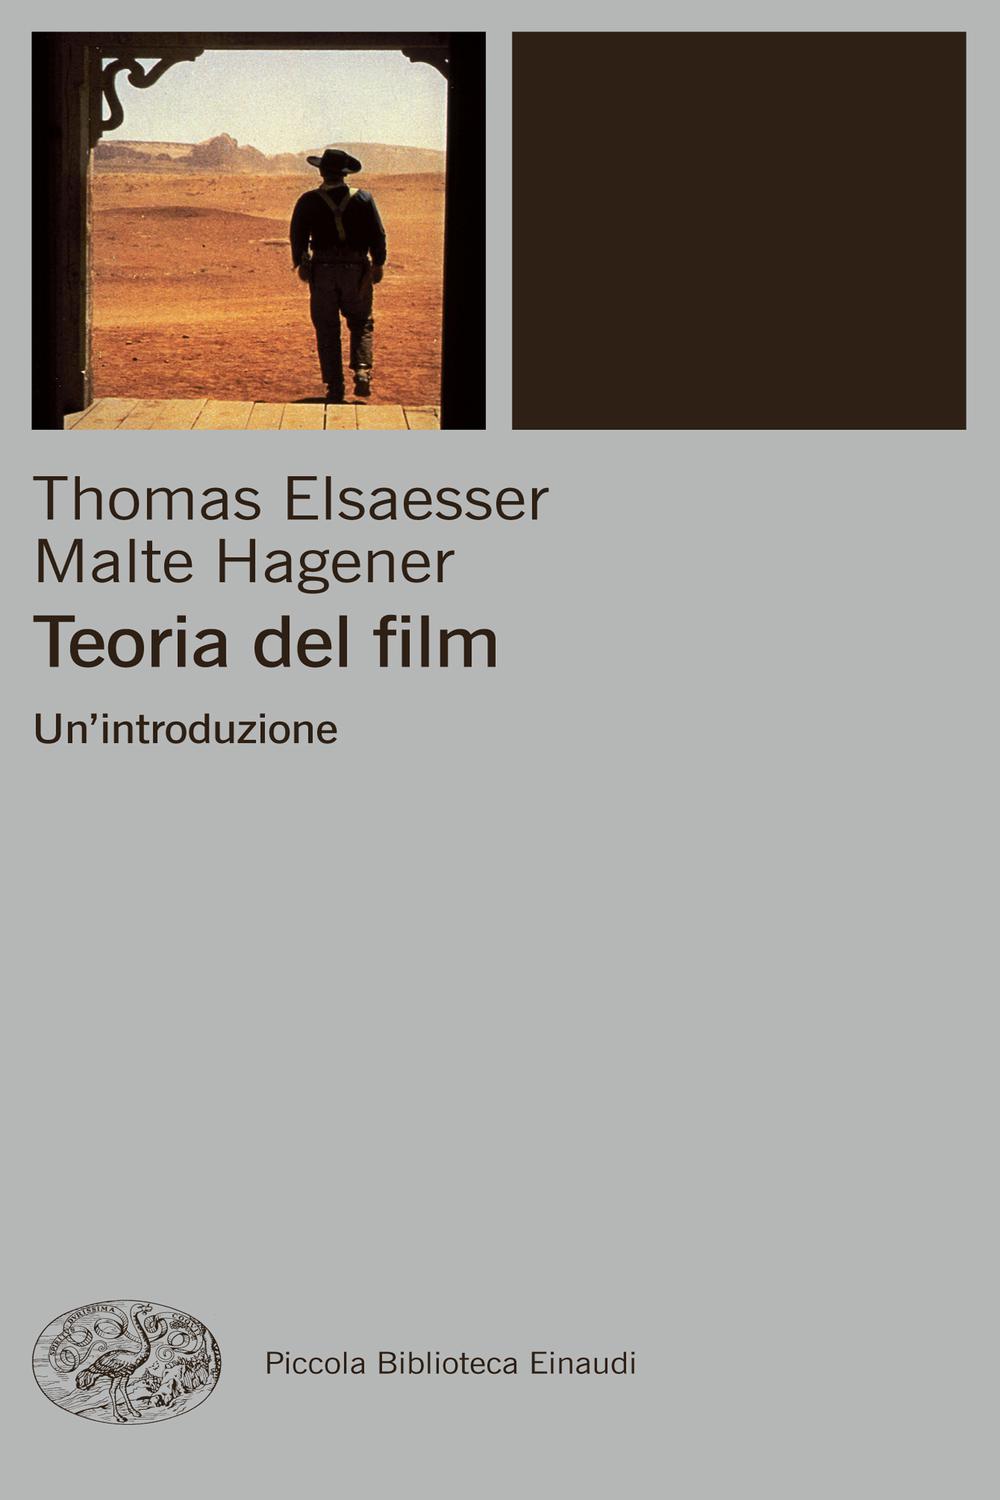 Teoria del film - Thomas Elsaesser, Malte Hagener